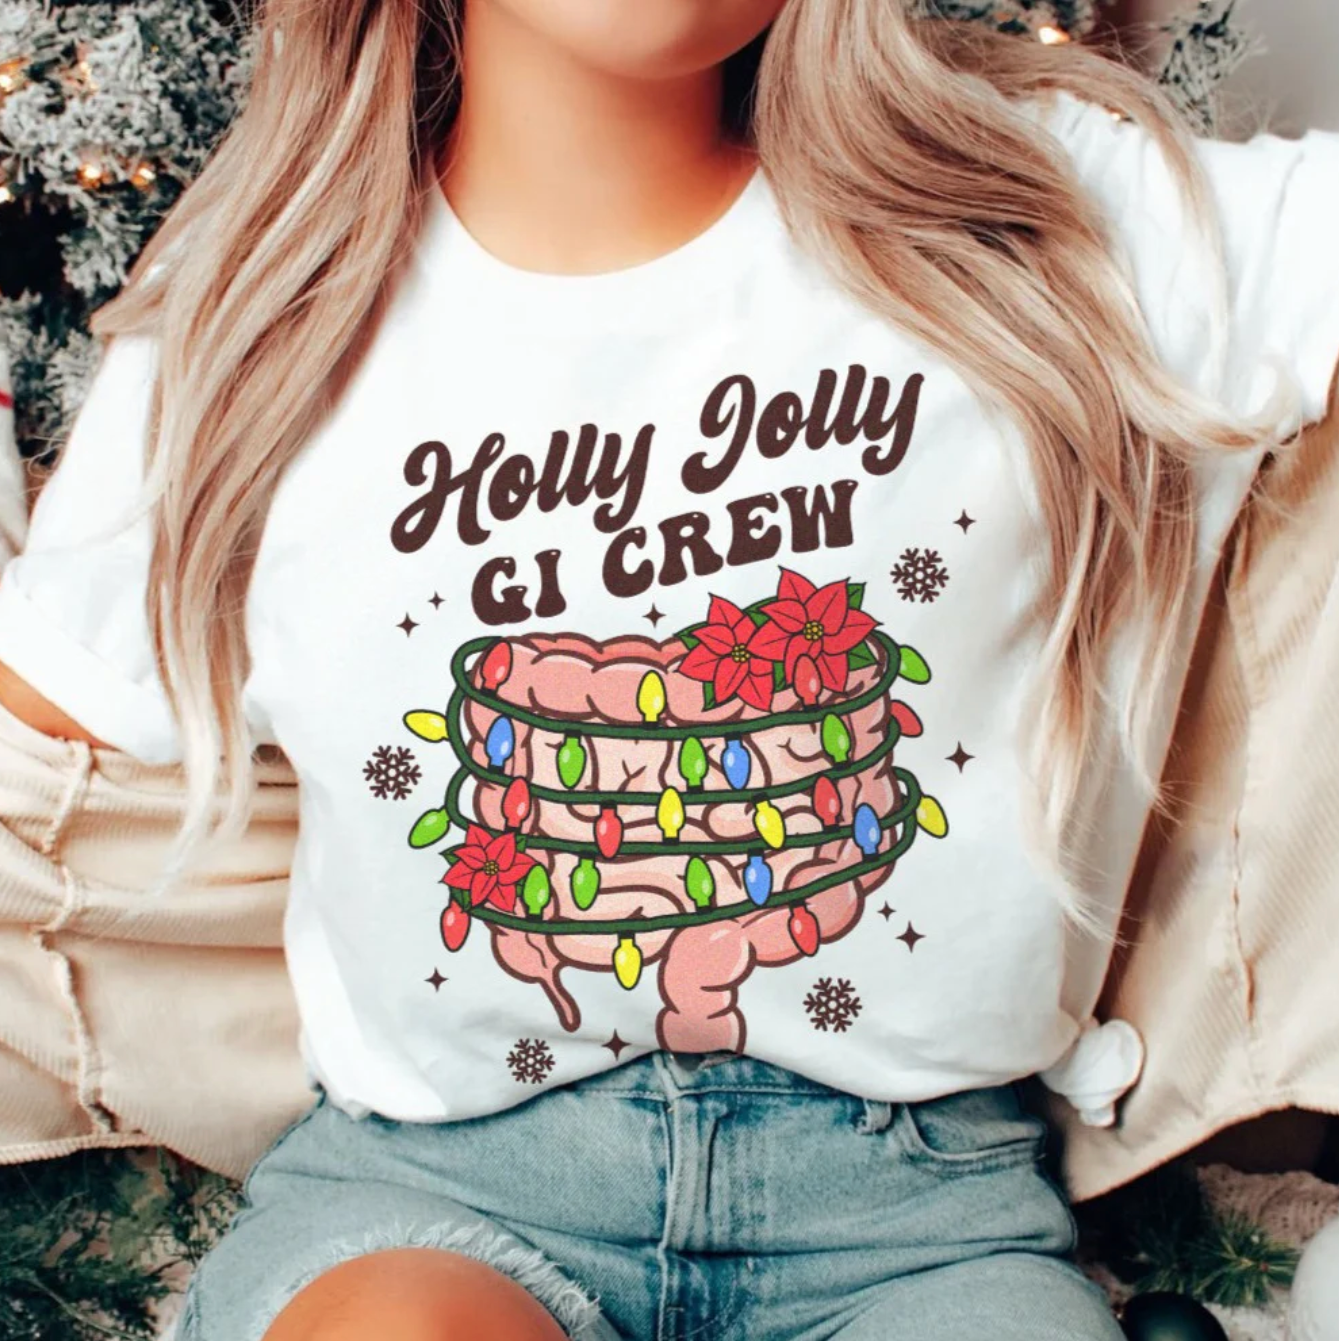 Holly Jolly GI Crew T-Shirt (Clearance - FINAL SALE)